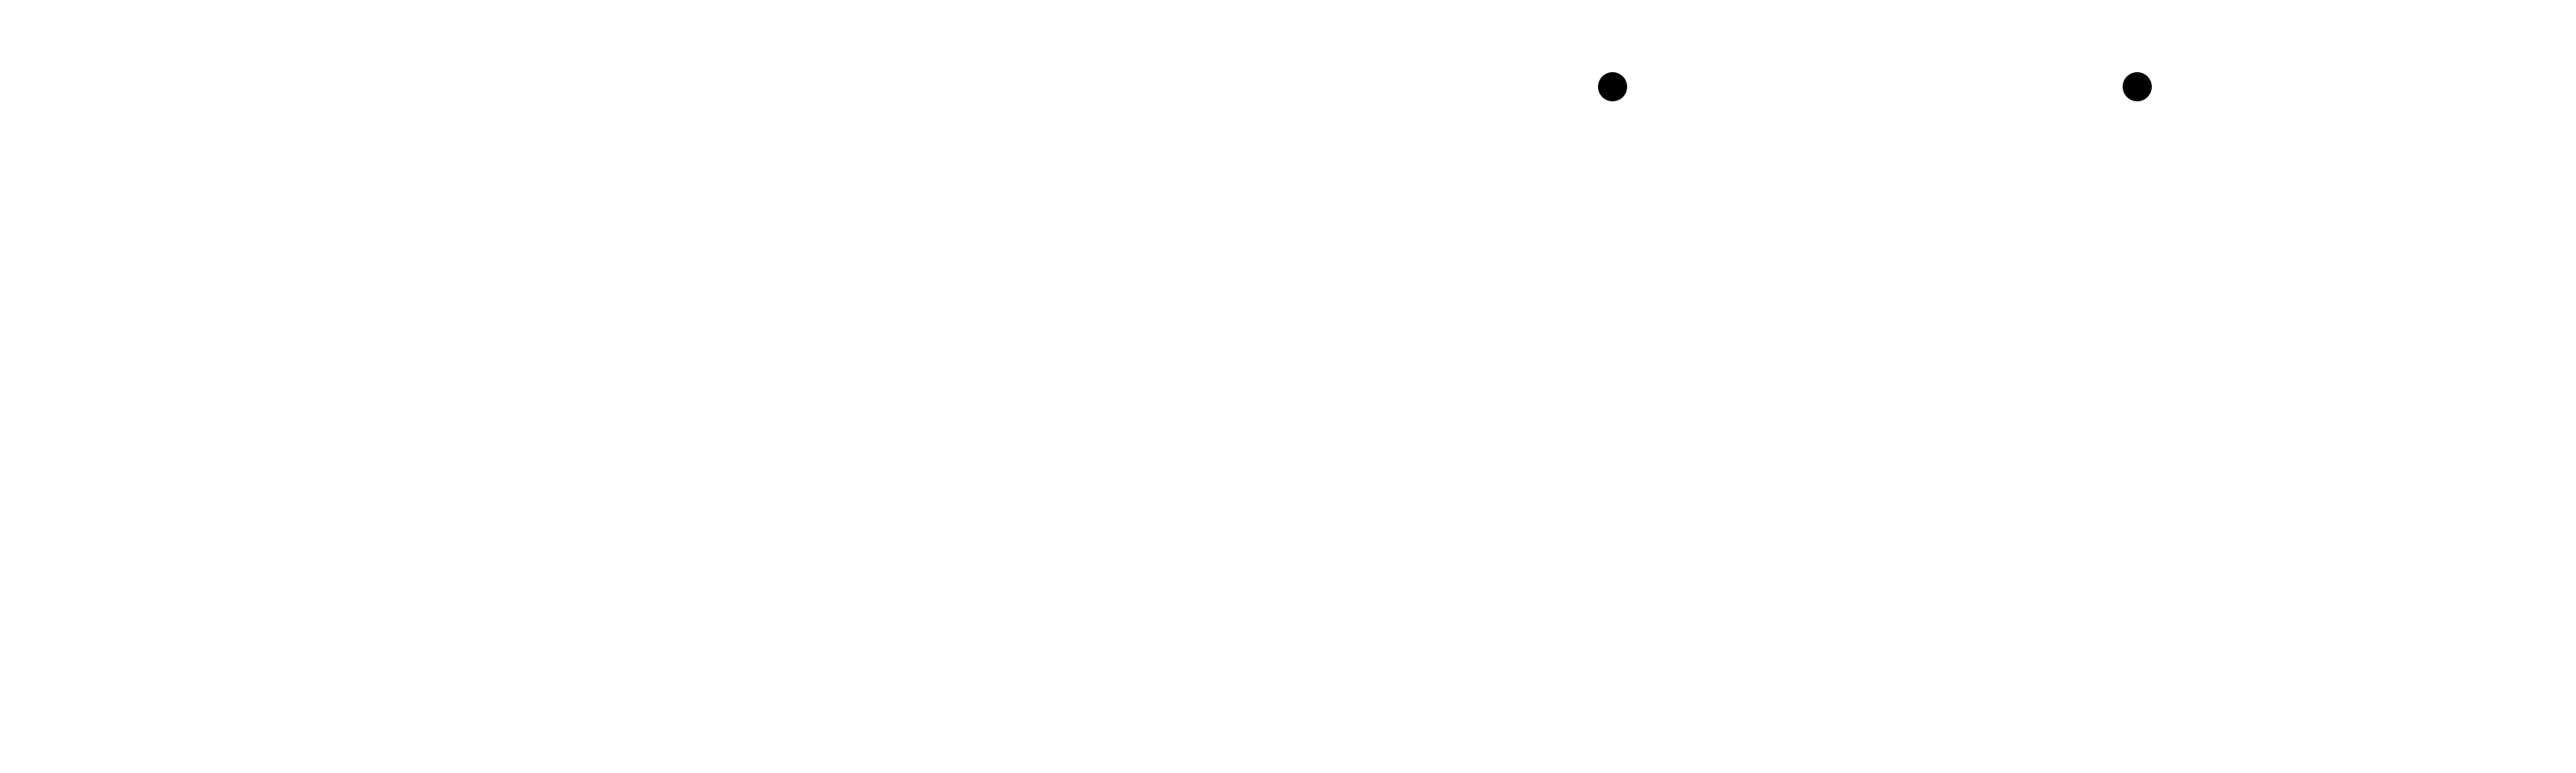 Ironcore logo